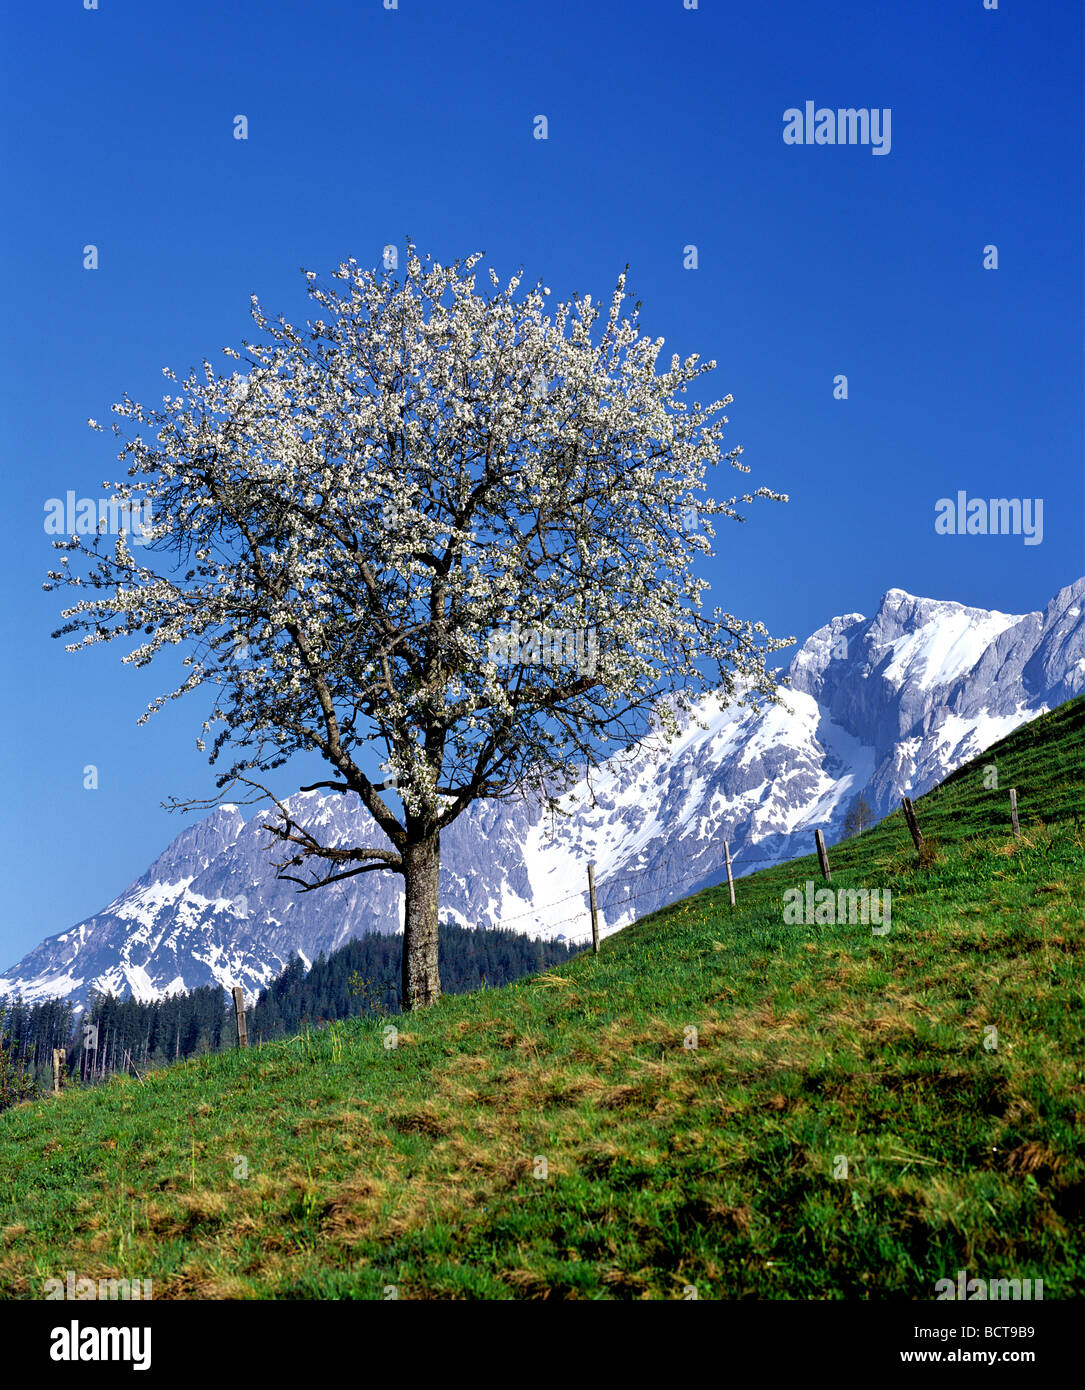 Blossoming Cherry tree (Cerasus), Mt Hochkoenig, Berchtesgaden Alps, Salzburg, Austria, Europe Stock Photo